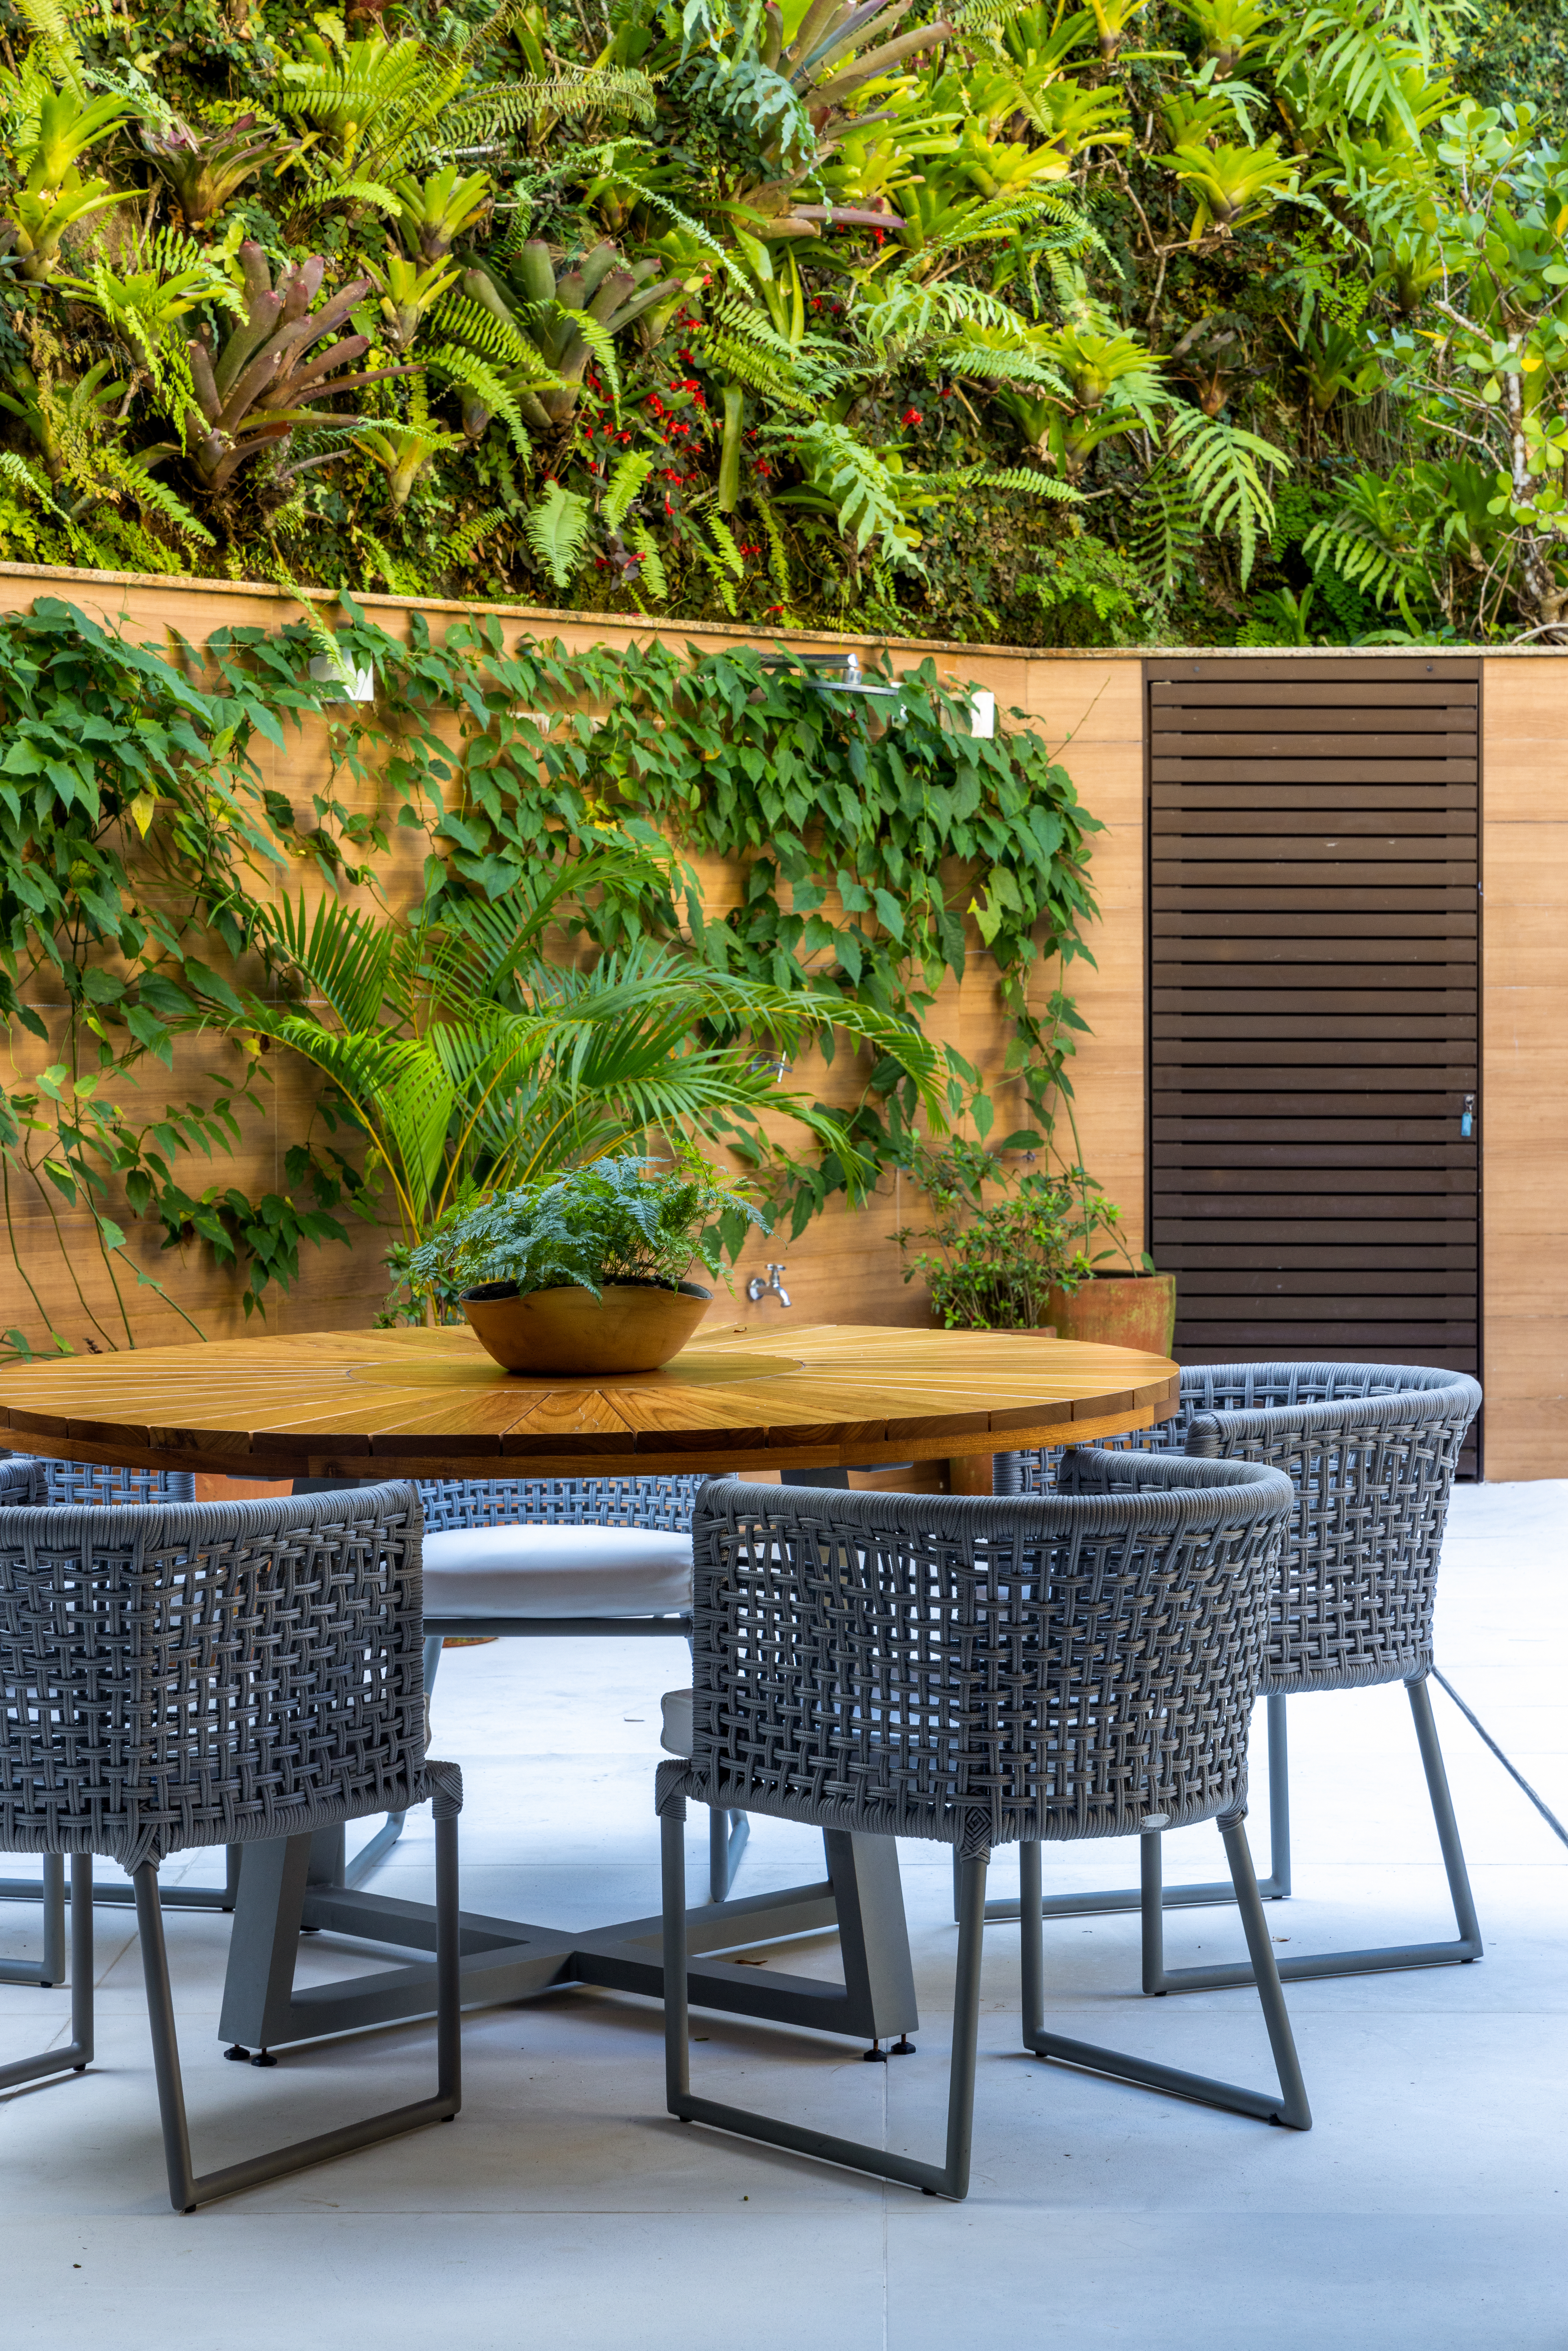 Projeto de Manuela Santos. Na foto, área externa com jardim e mesa redonda de madeira.